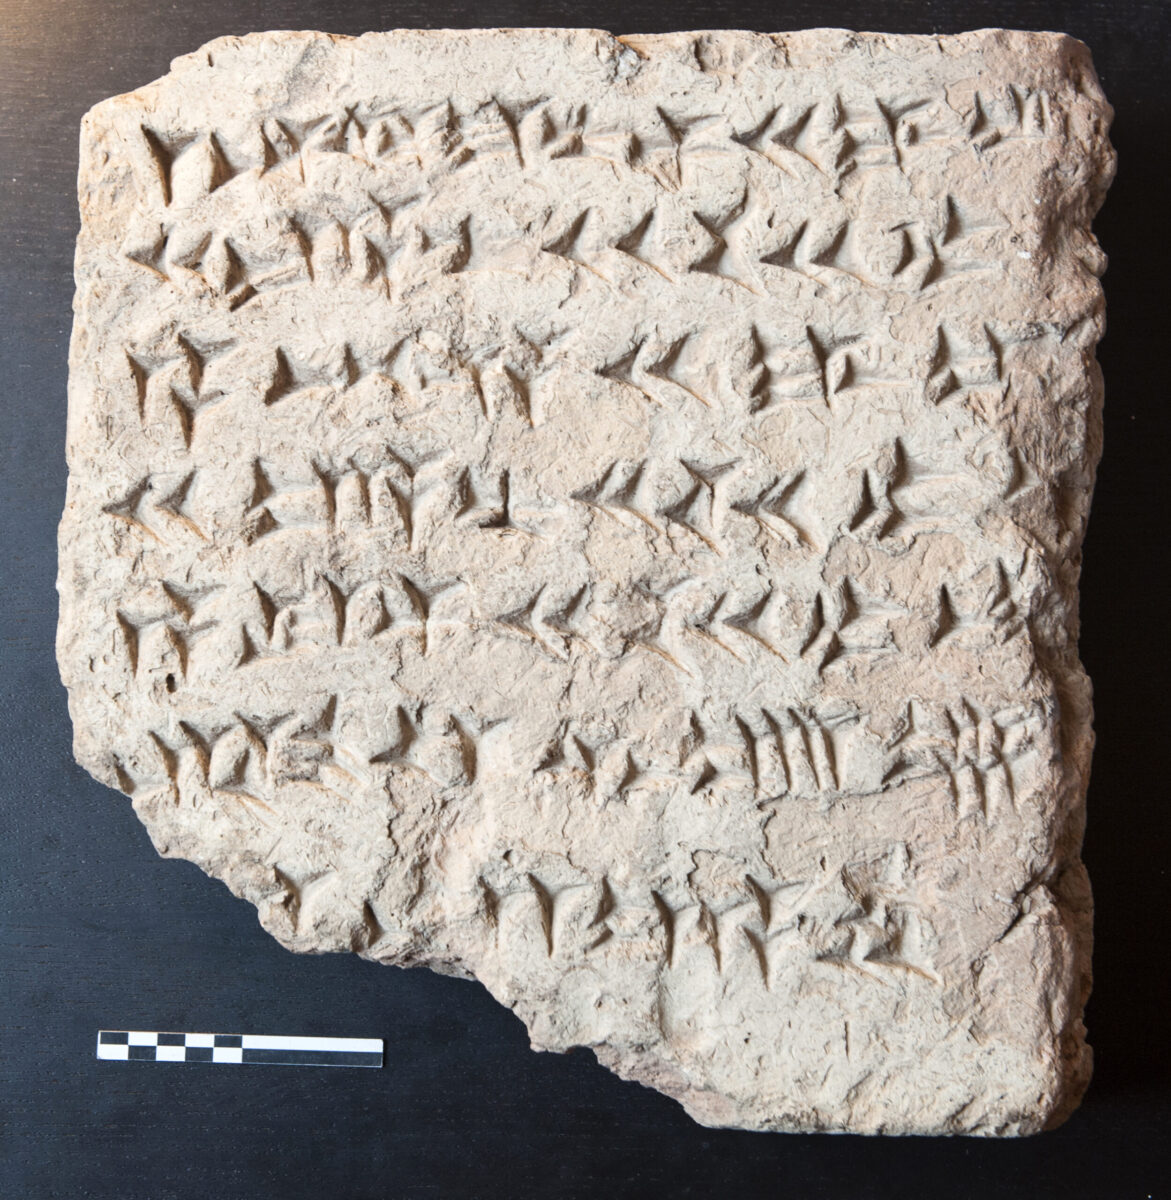 Mattone cotto con iscrizione cuneiforme del re assiro Salmanassar III (858-824 a.C.) che ne attesta la provenienza dalla ziqqurat di Kalkhu (moderna Nimrud, Iraq settentrionale)